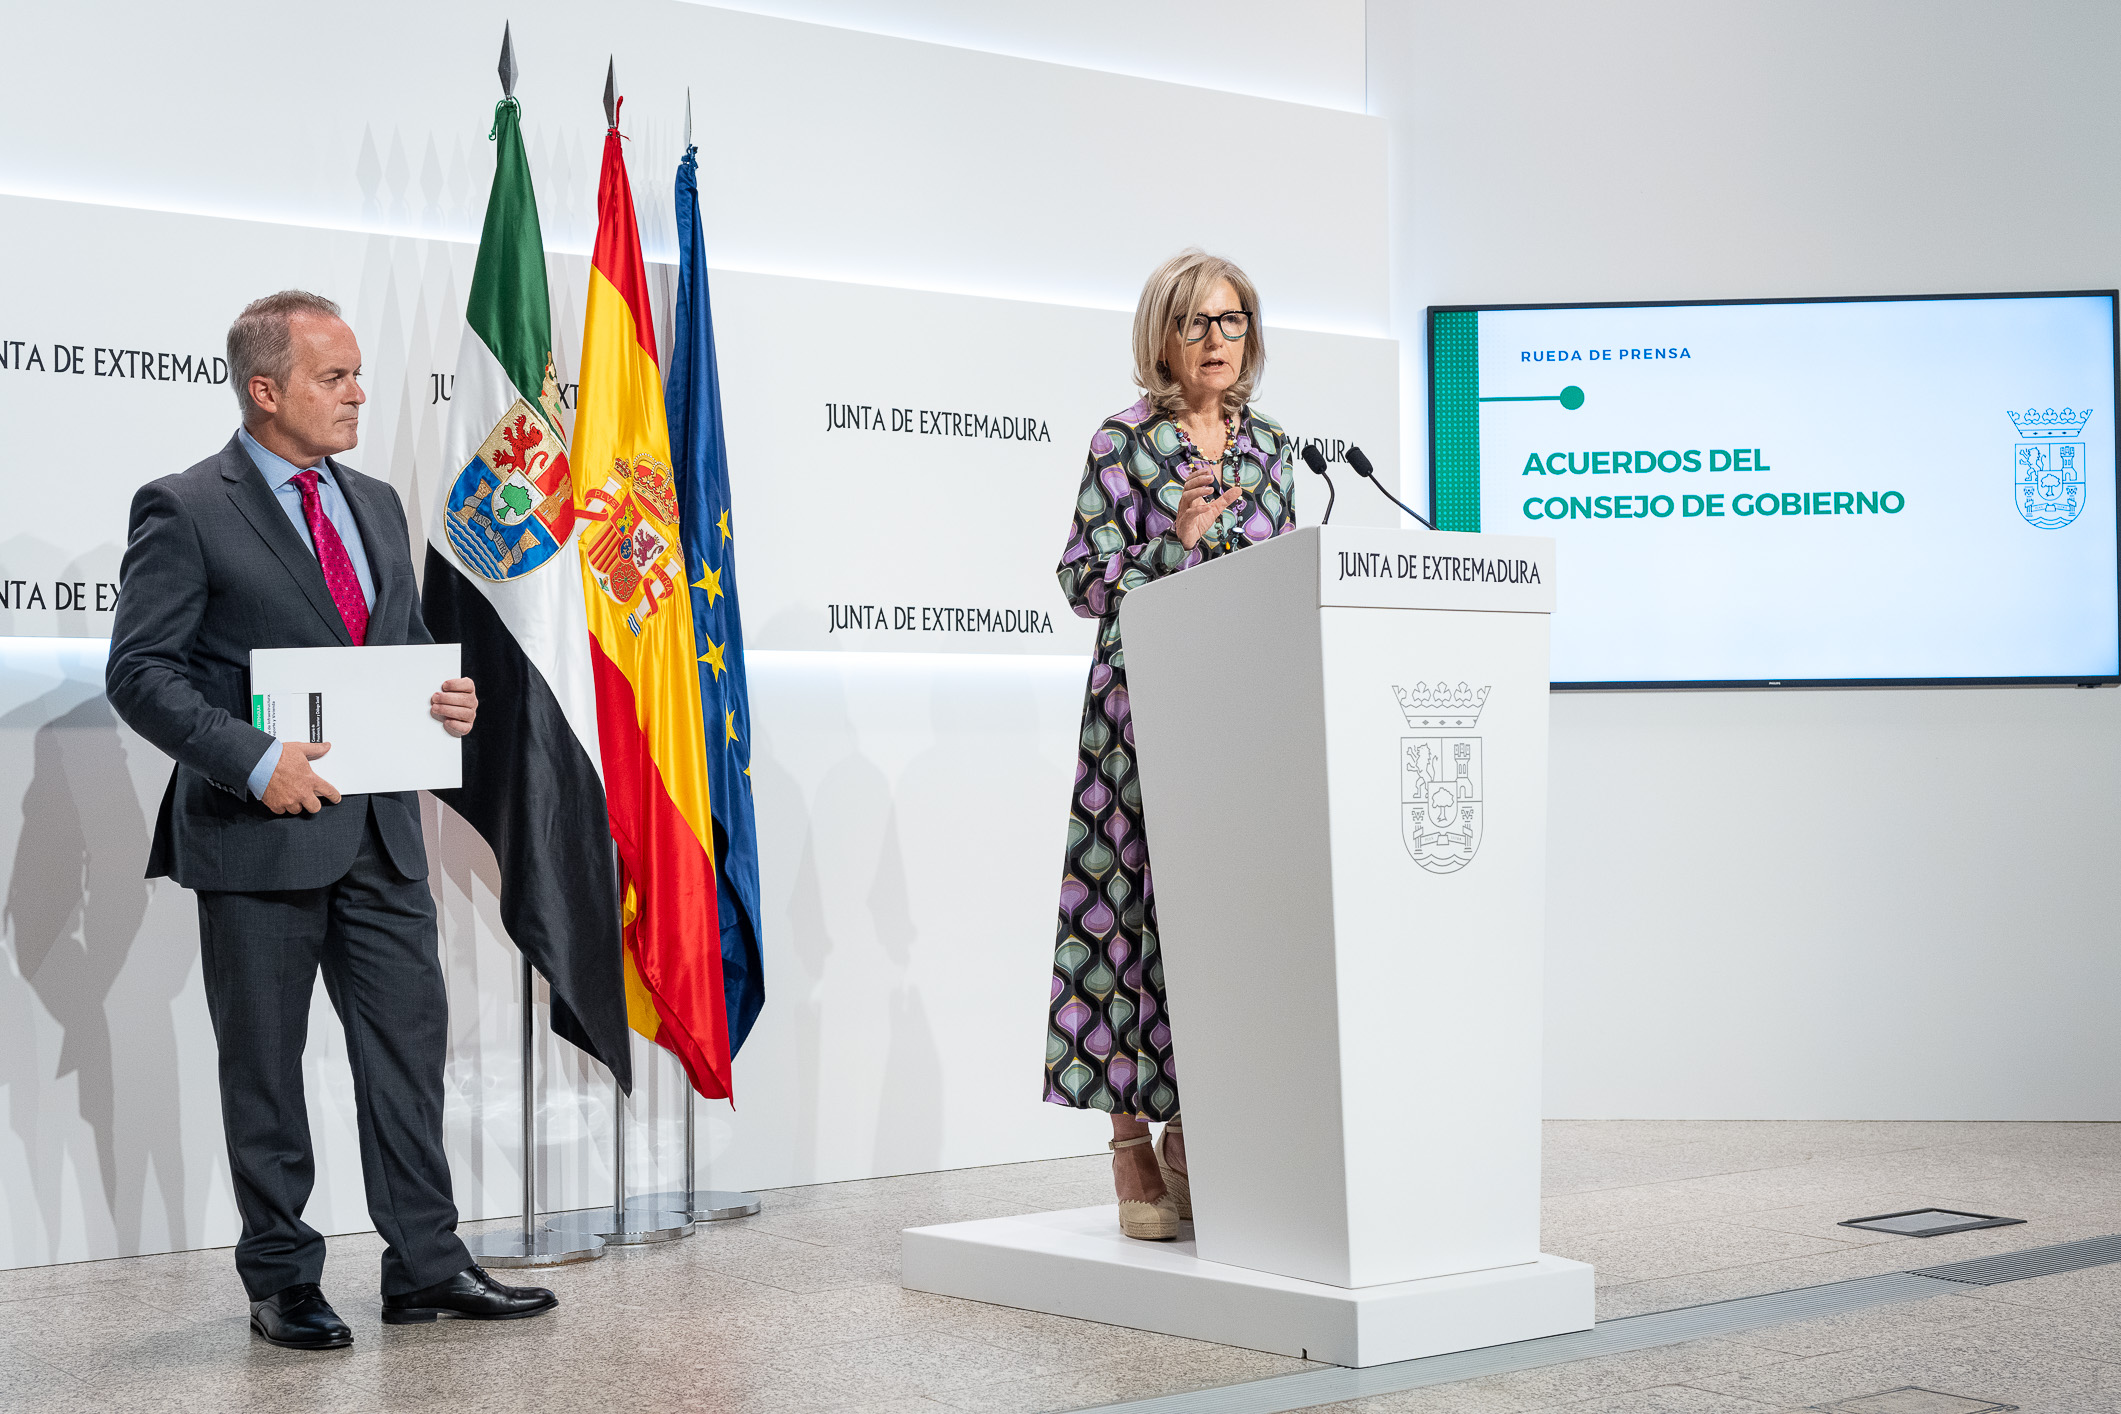 La portavoz de la Junta de Extremadura, Victoria Bazaga, informa de los acuerdos del Consejo de Gobierno, junto al consejero de Infraestructuras, Transporte y Vivienda, Manuel Martín